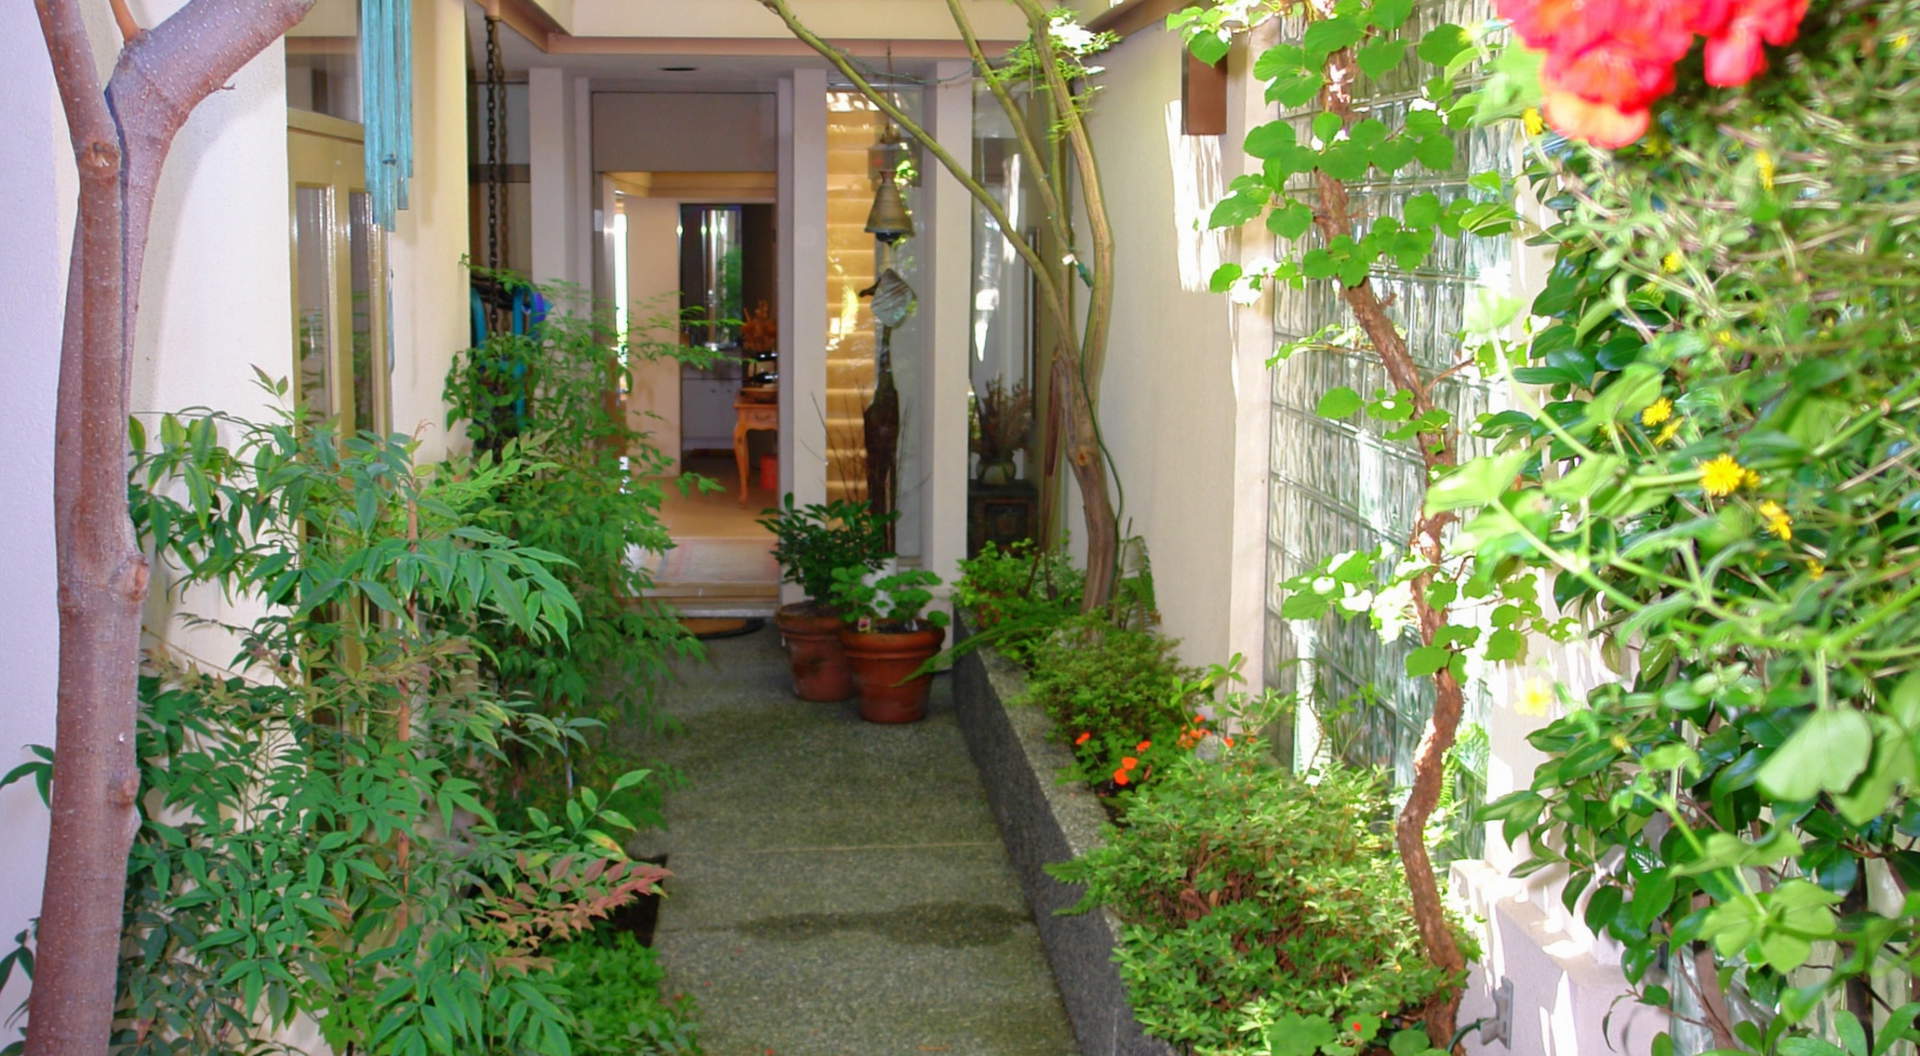 Courtyard Entrance